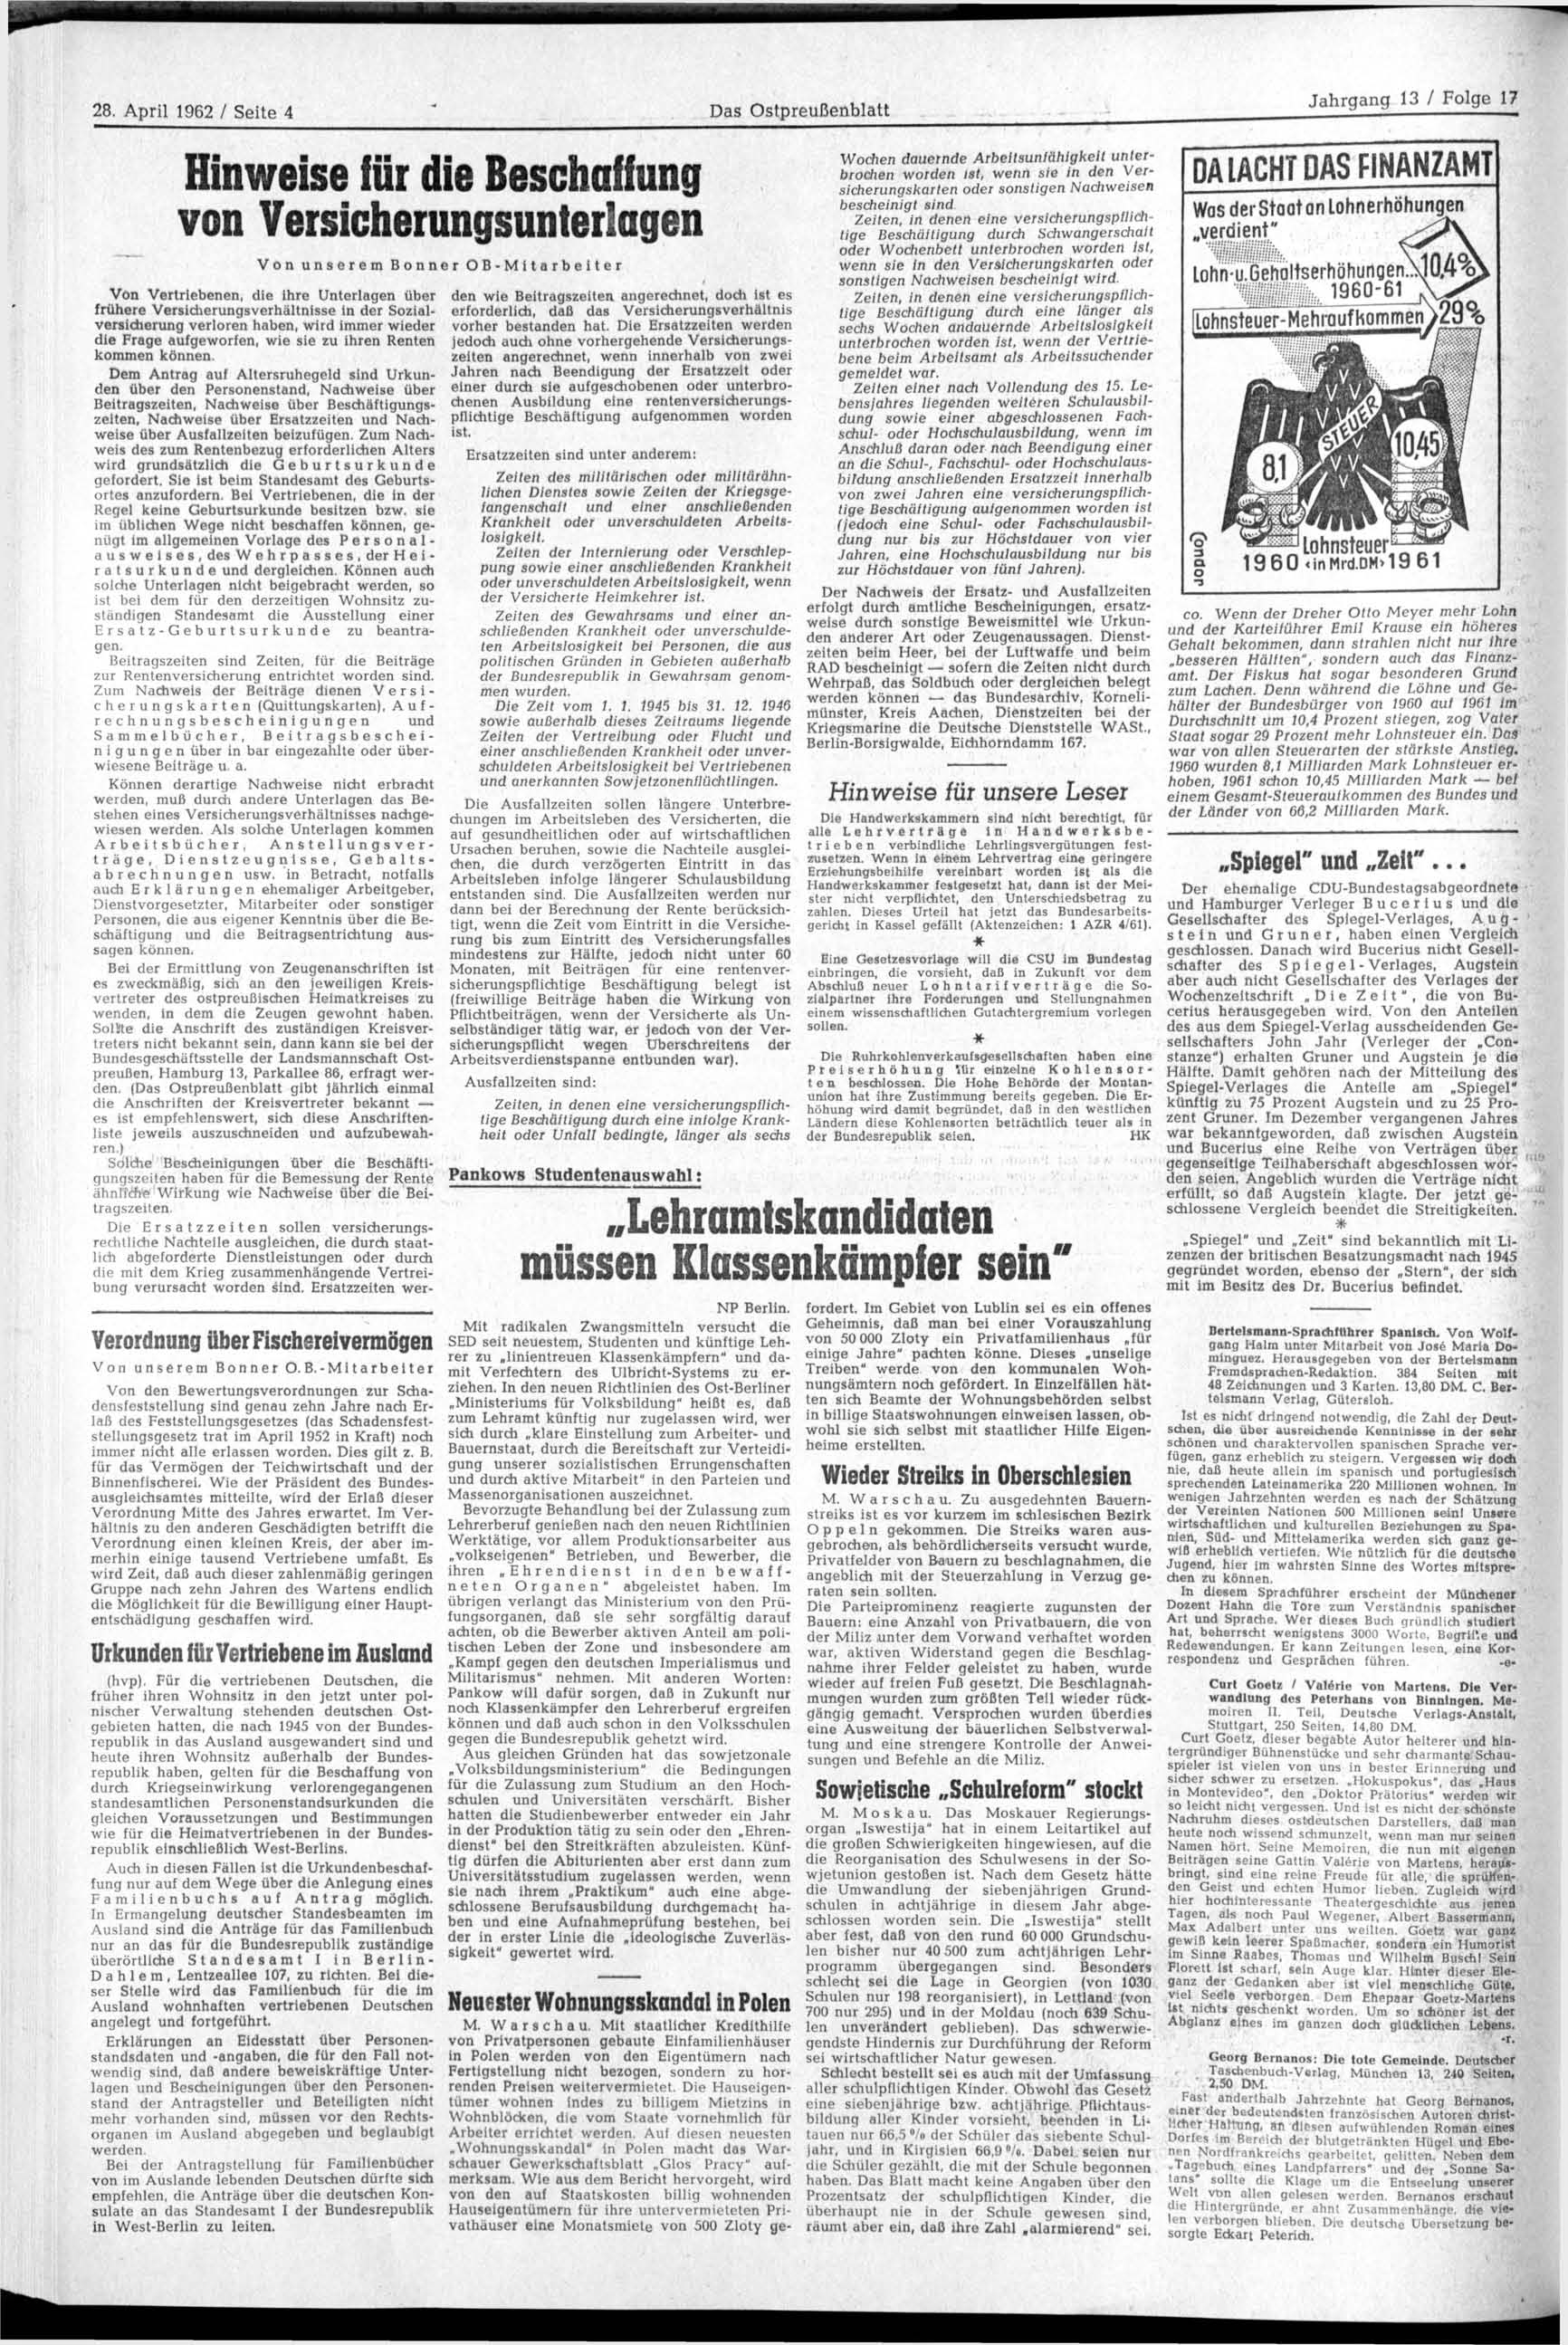 28. April 1962 / Seite 4 Das Ostpreußenblatt Hinweise für die Beschaffung von Versicherungsunteriagen Von unserem Bonner OB-Mitarbeiter Von Vertriebenen, die ihre Unterlagen über frühere